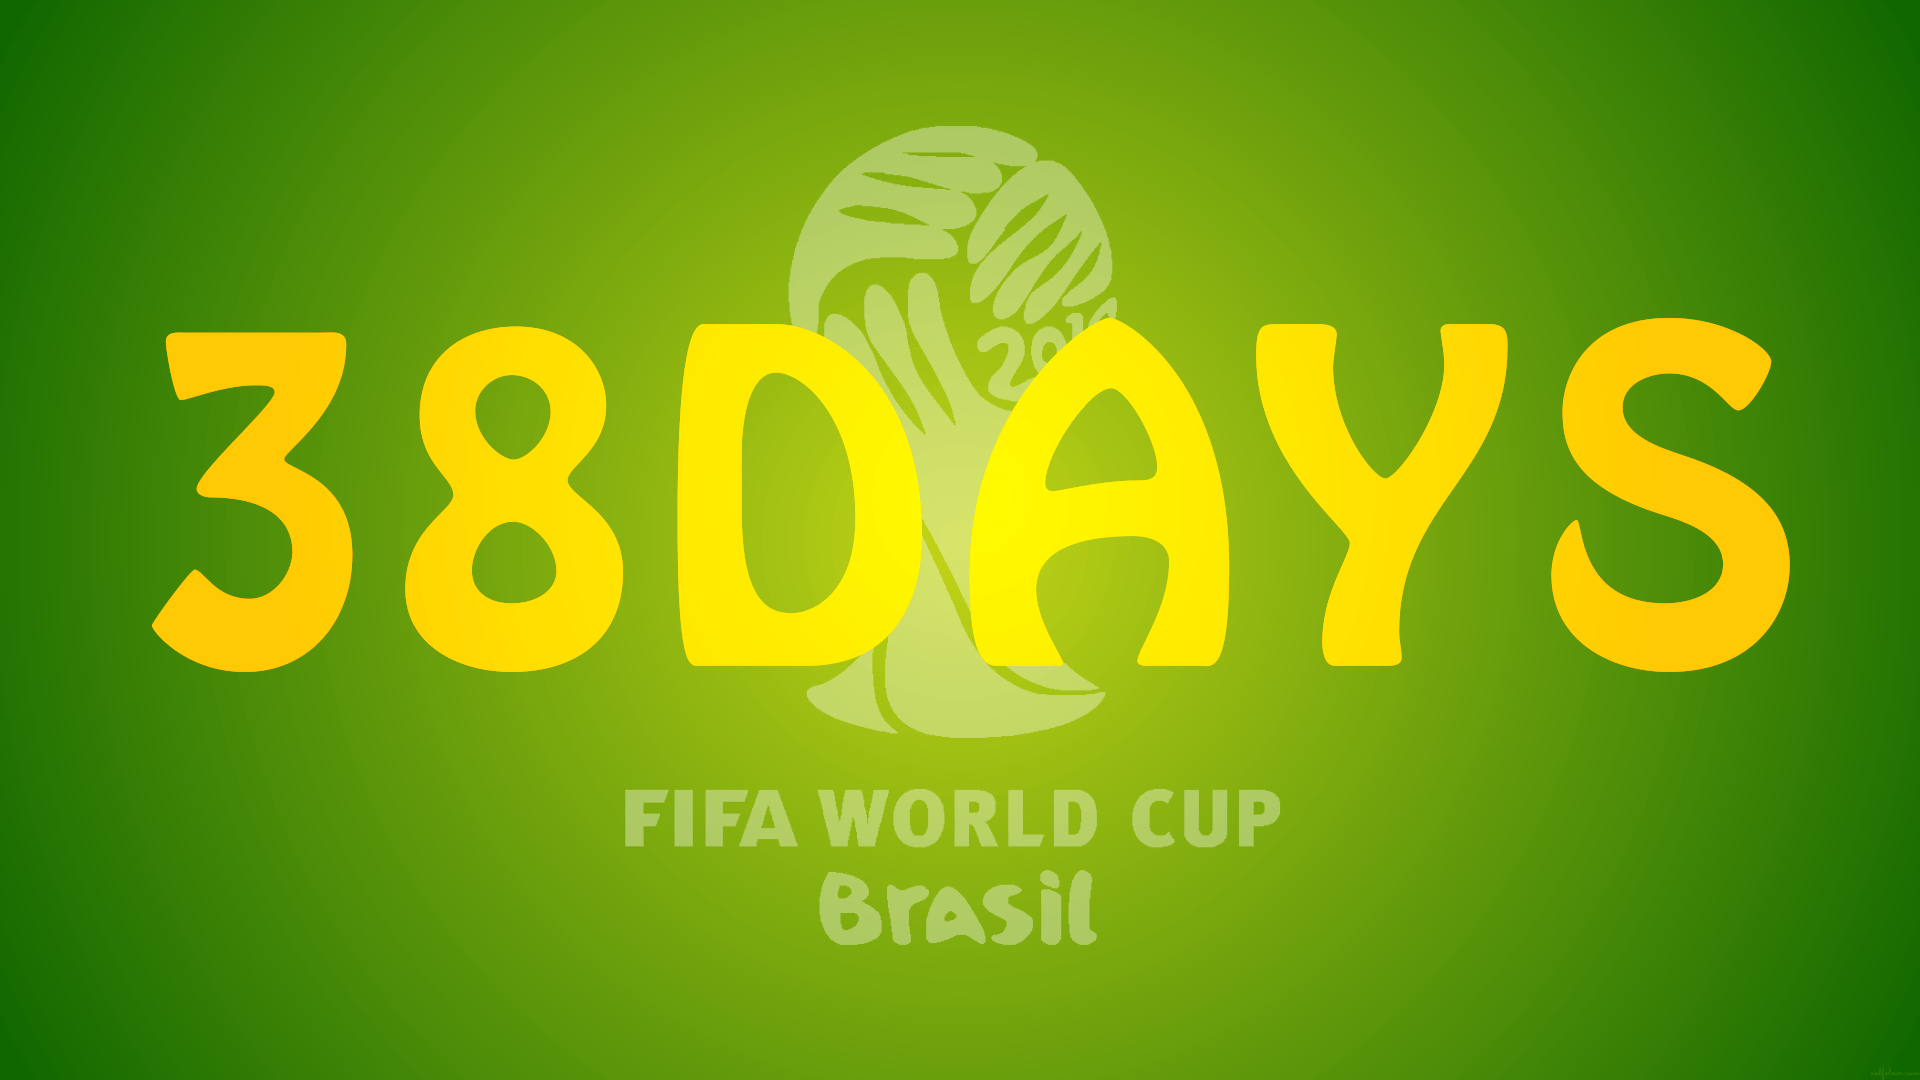 2014-World-Cup-FIFA-Brazil-38days